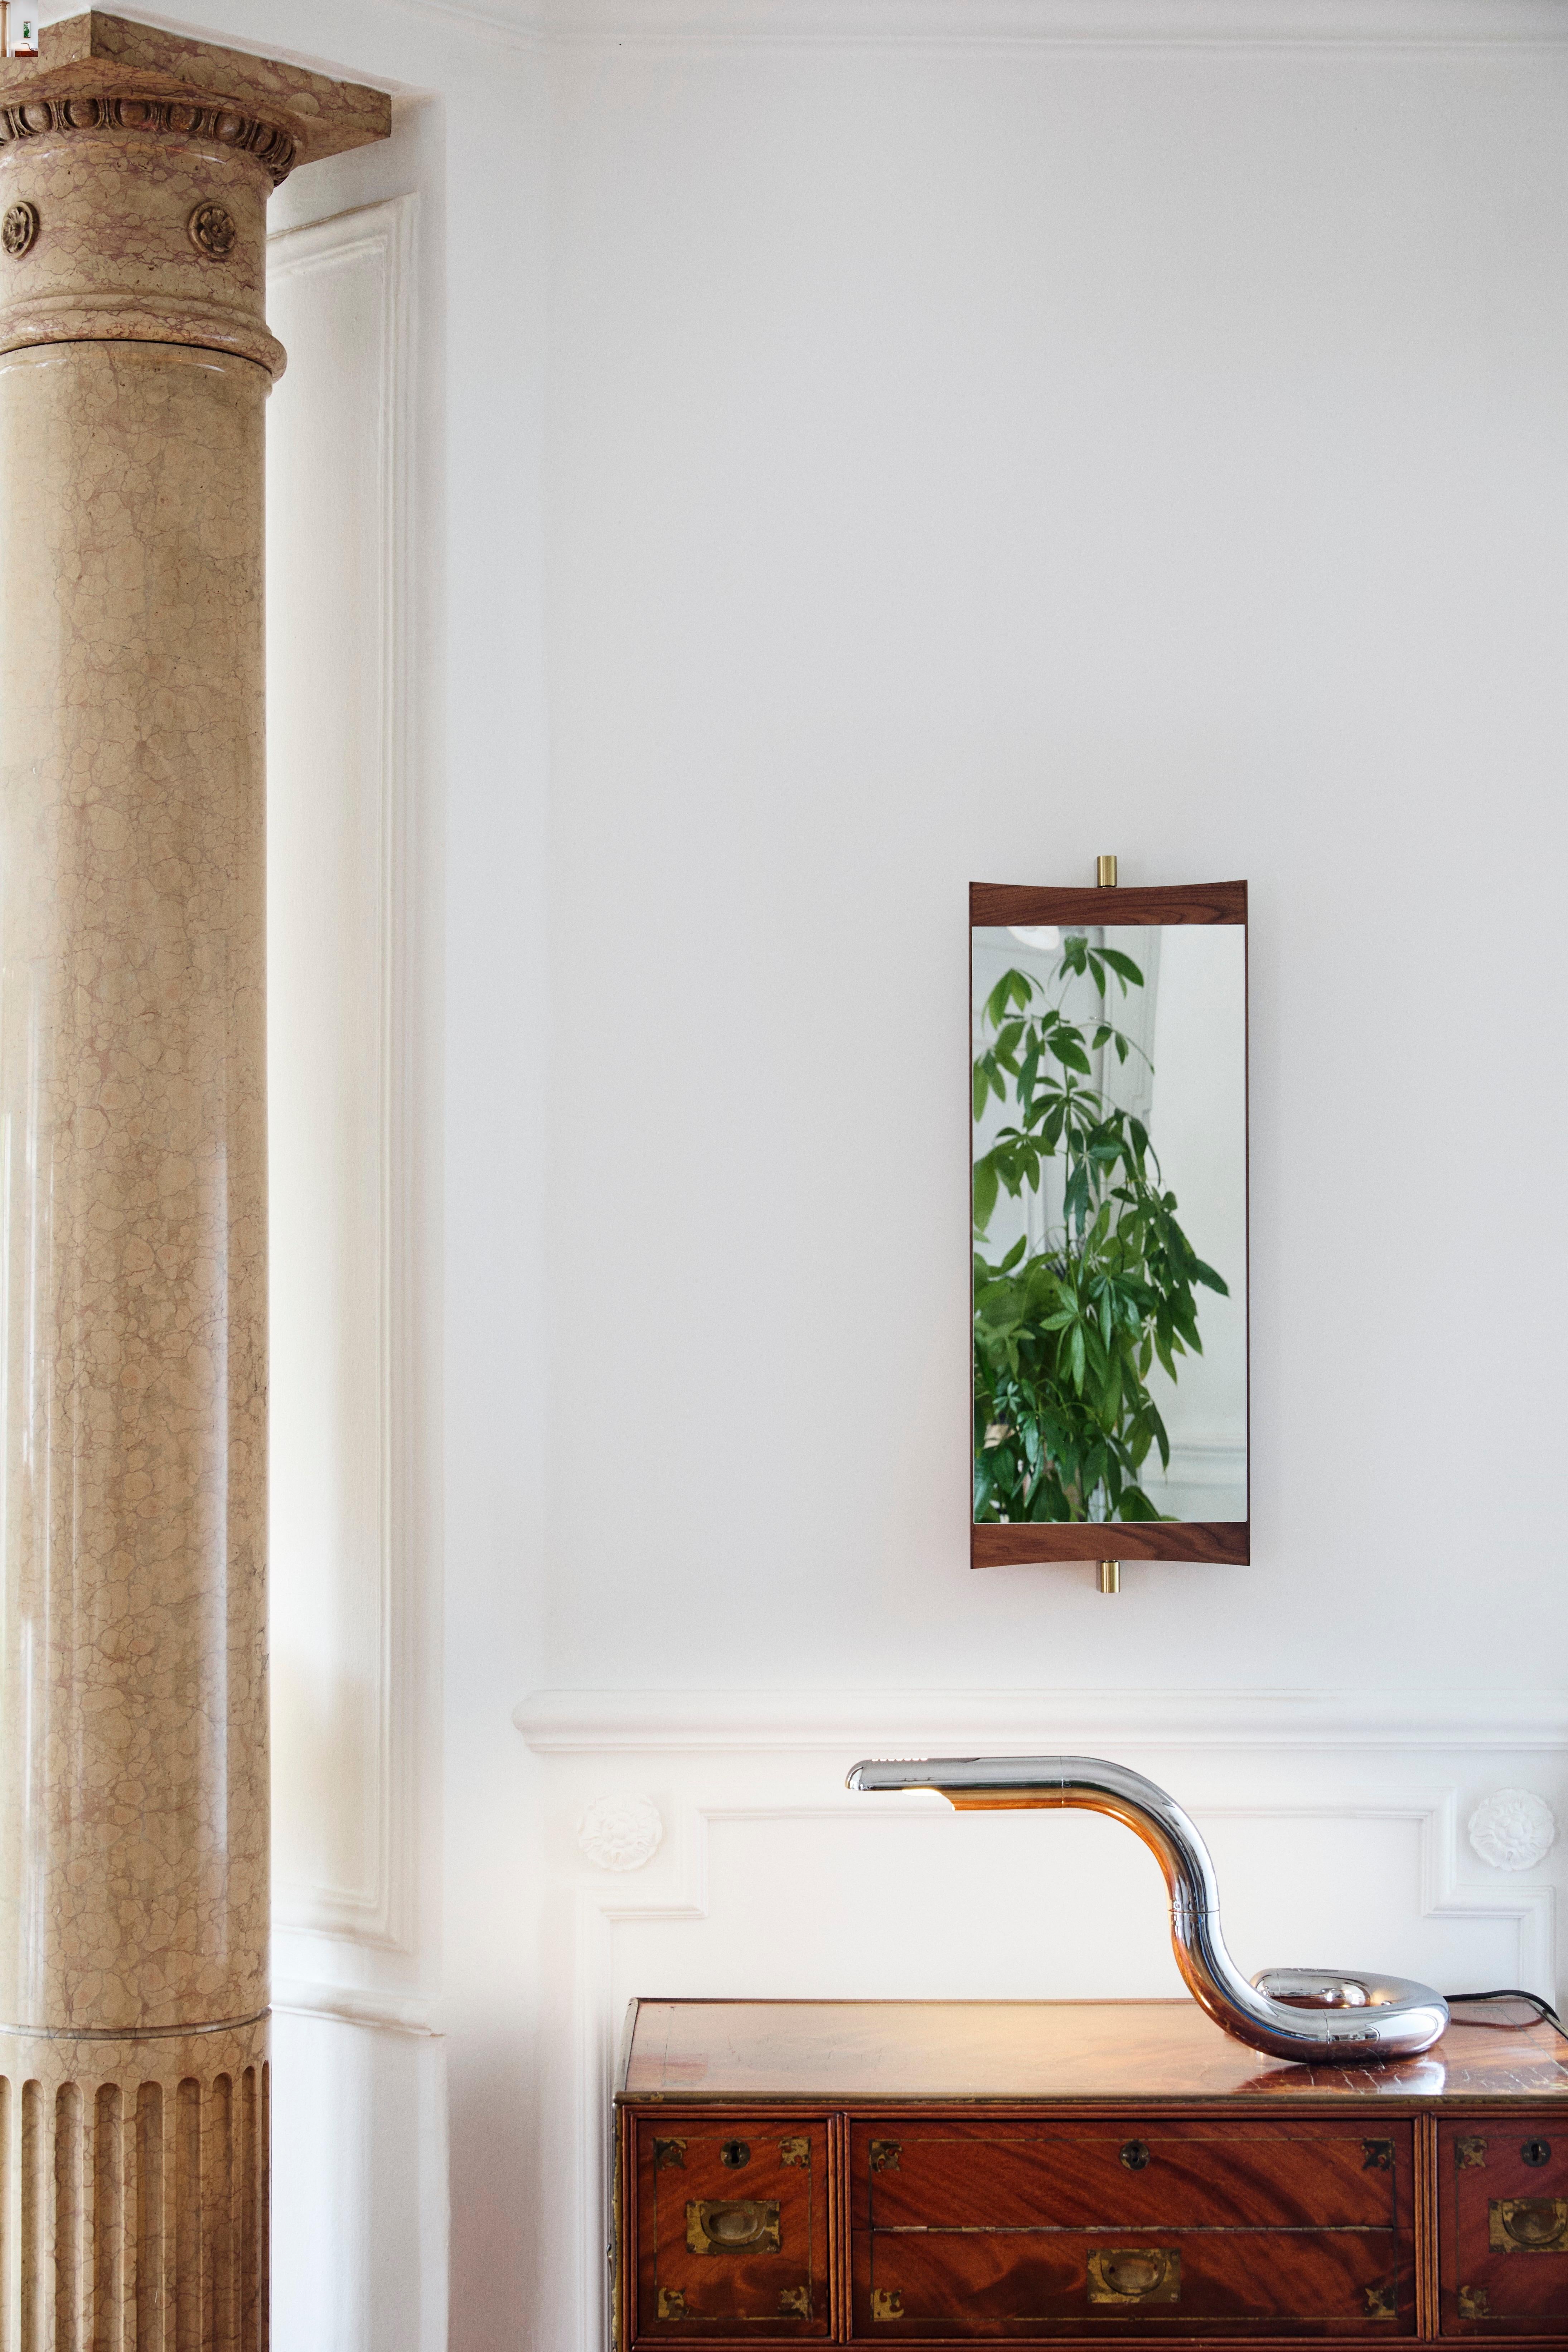 Miroir de courtoisie GamFratesi pour GUBI.

Cette nouvelle collection de miroirs muraux réinvente ingénieusement le miroir de courtoisie pour les intérieurs contemporains. Exécuté en noyer et en laiton, le miroir Vanity incarne la capacité de